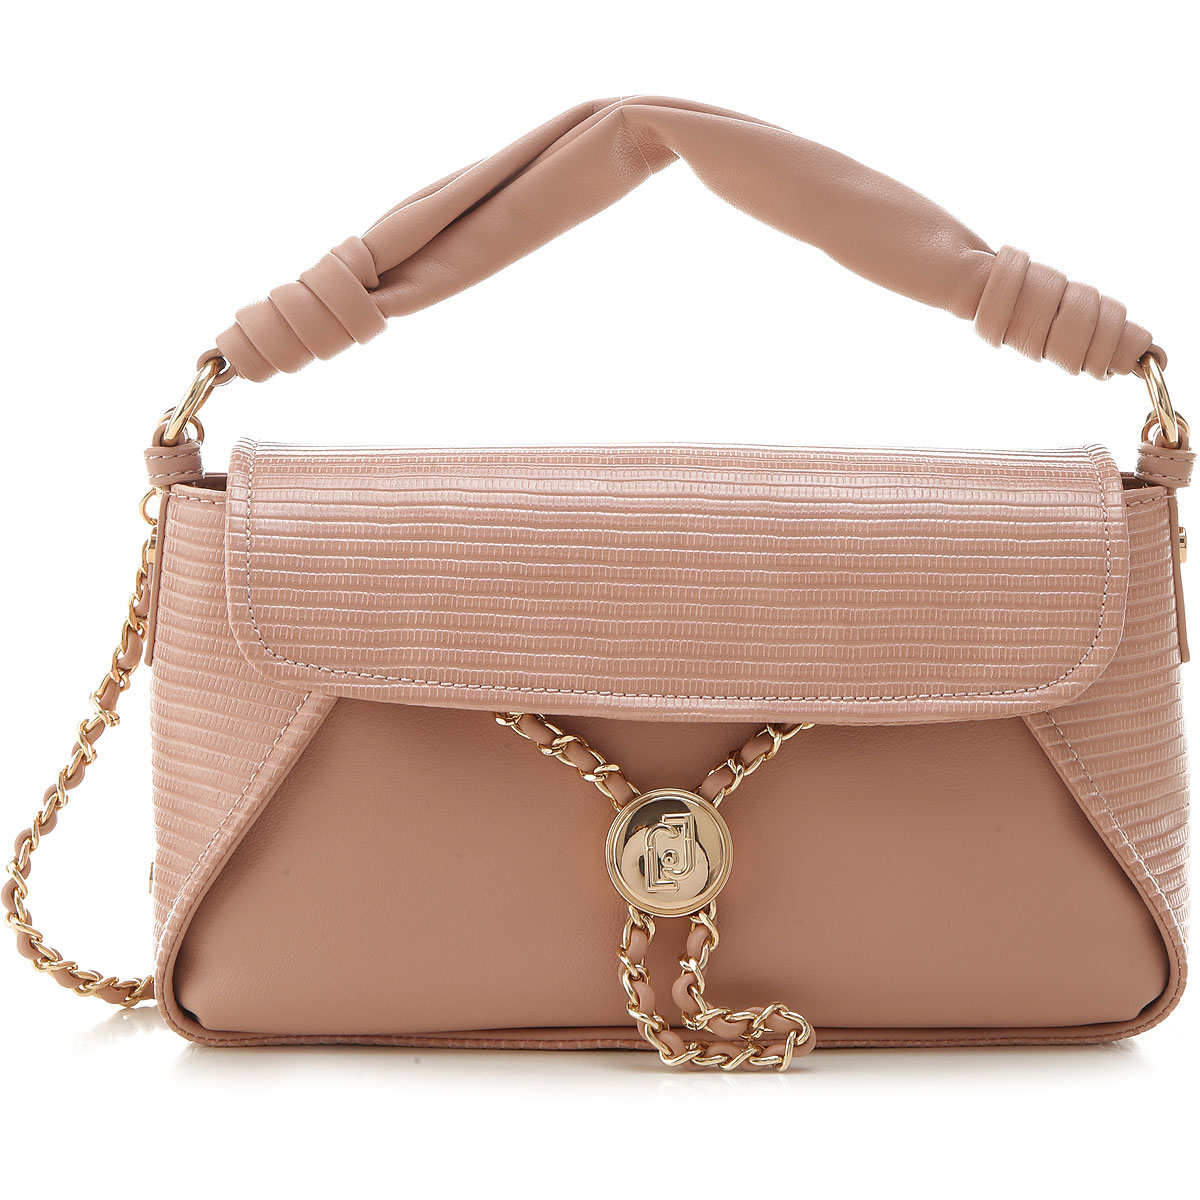 Handbags Liu Jo, Style code: aa1078e0040-41310-